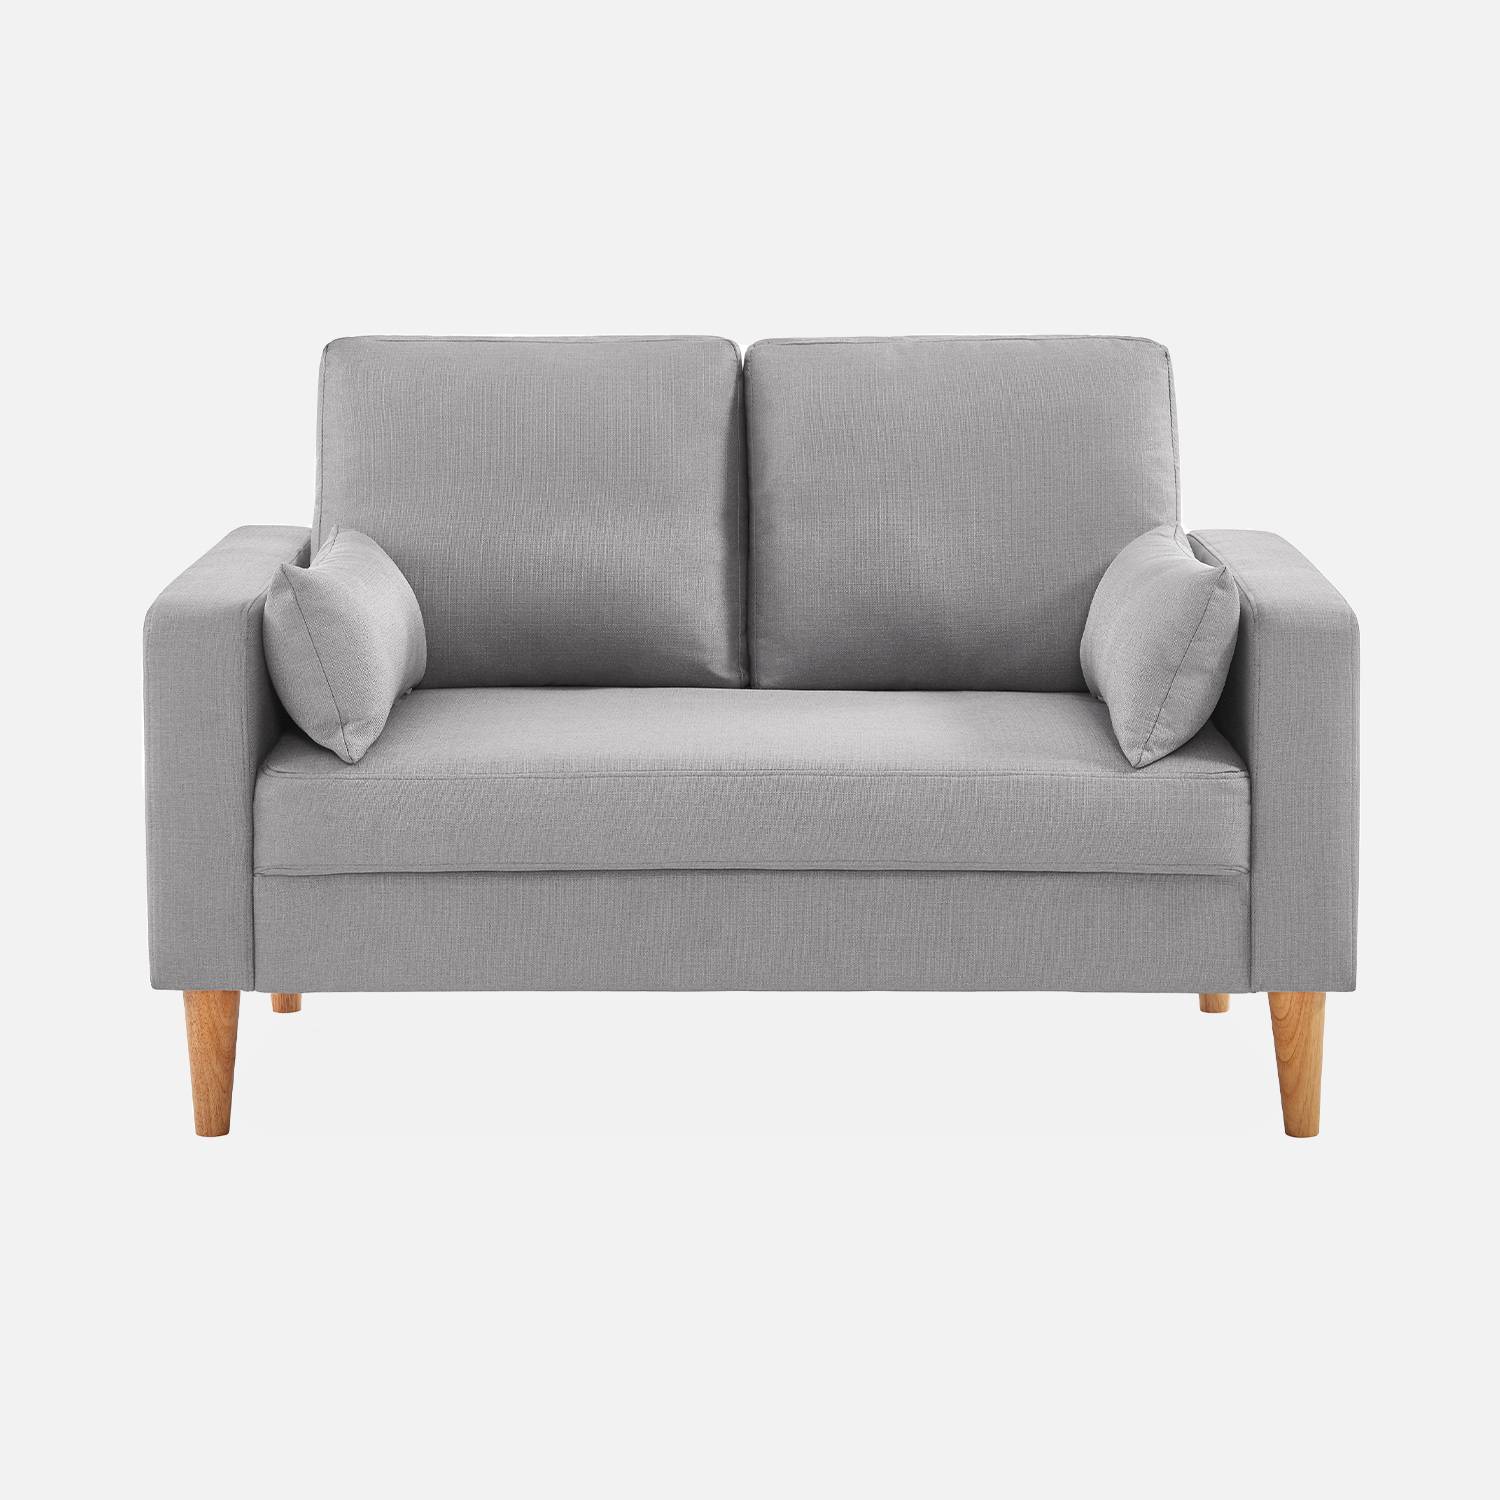 2-Sitz Sofa - Bjorn 2 - Hellgrau, Gestell aus Eukalyptus, Bezug aus Polyester, Holzbeine, Sofa im skandinavischen Stil  Photo3